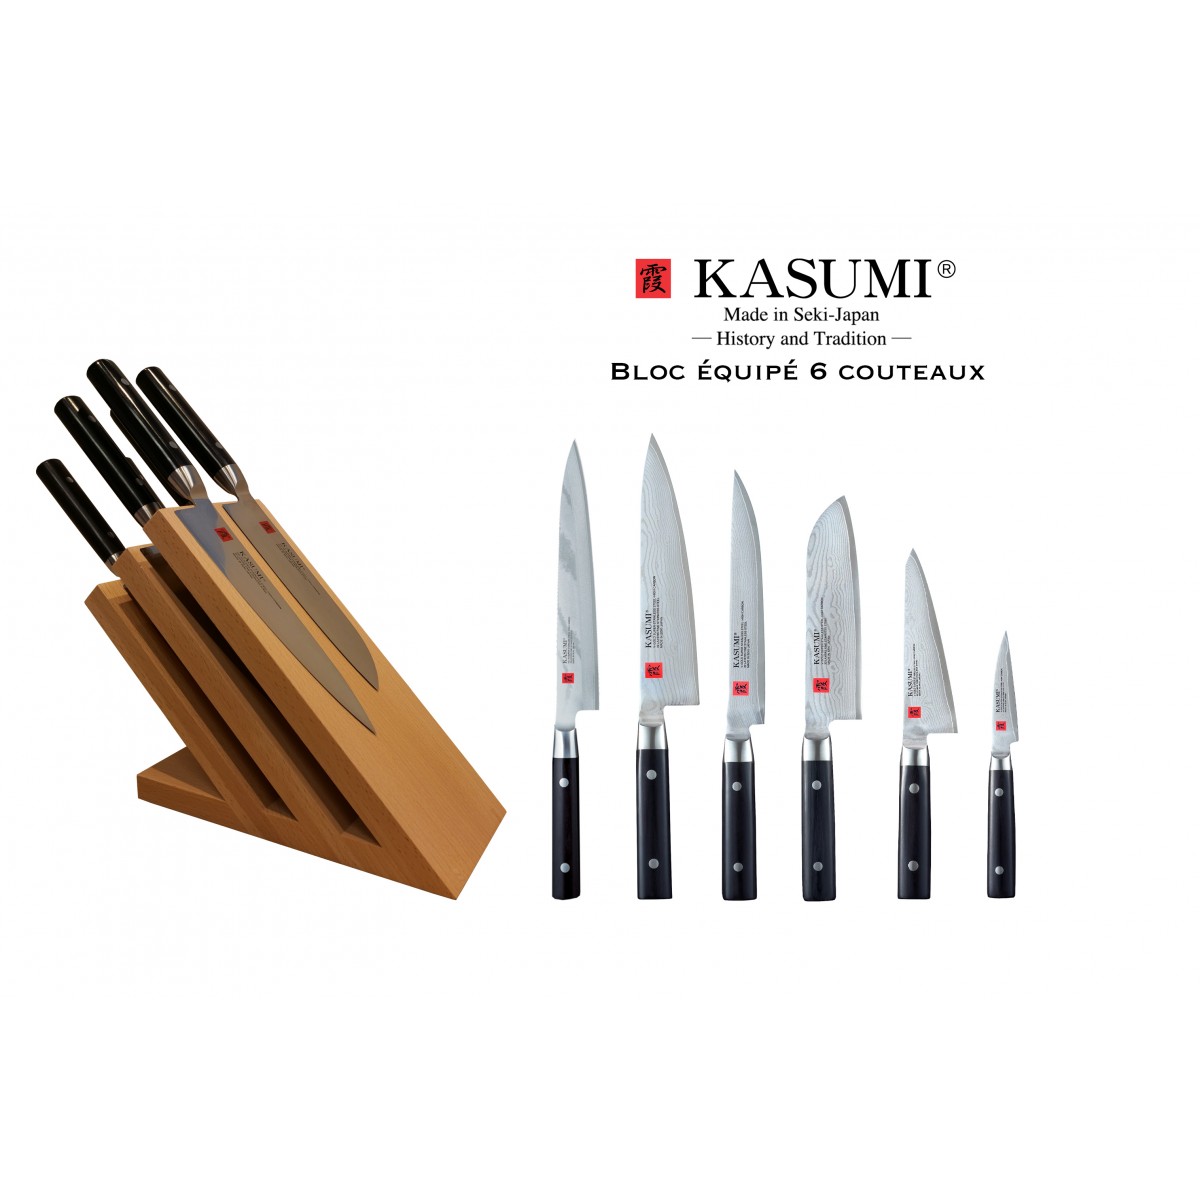 Ciseaux de cuisine Kasumi - Chroma France